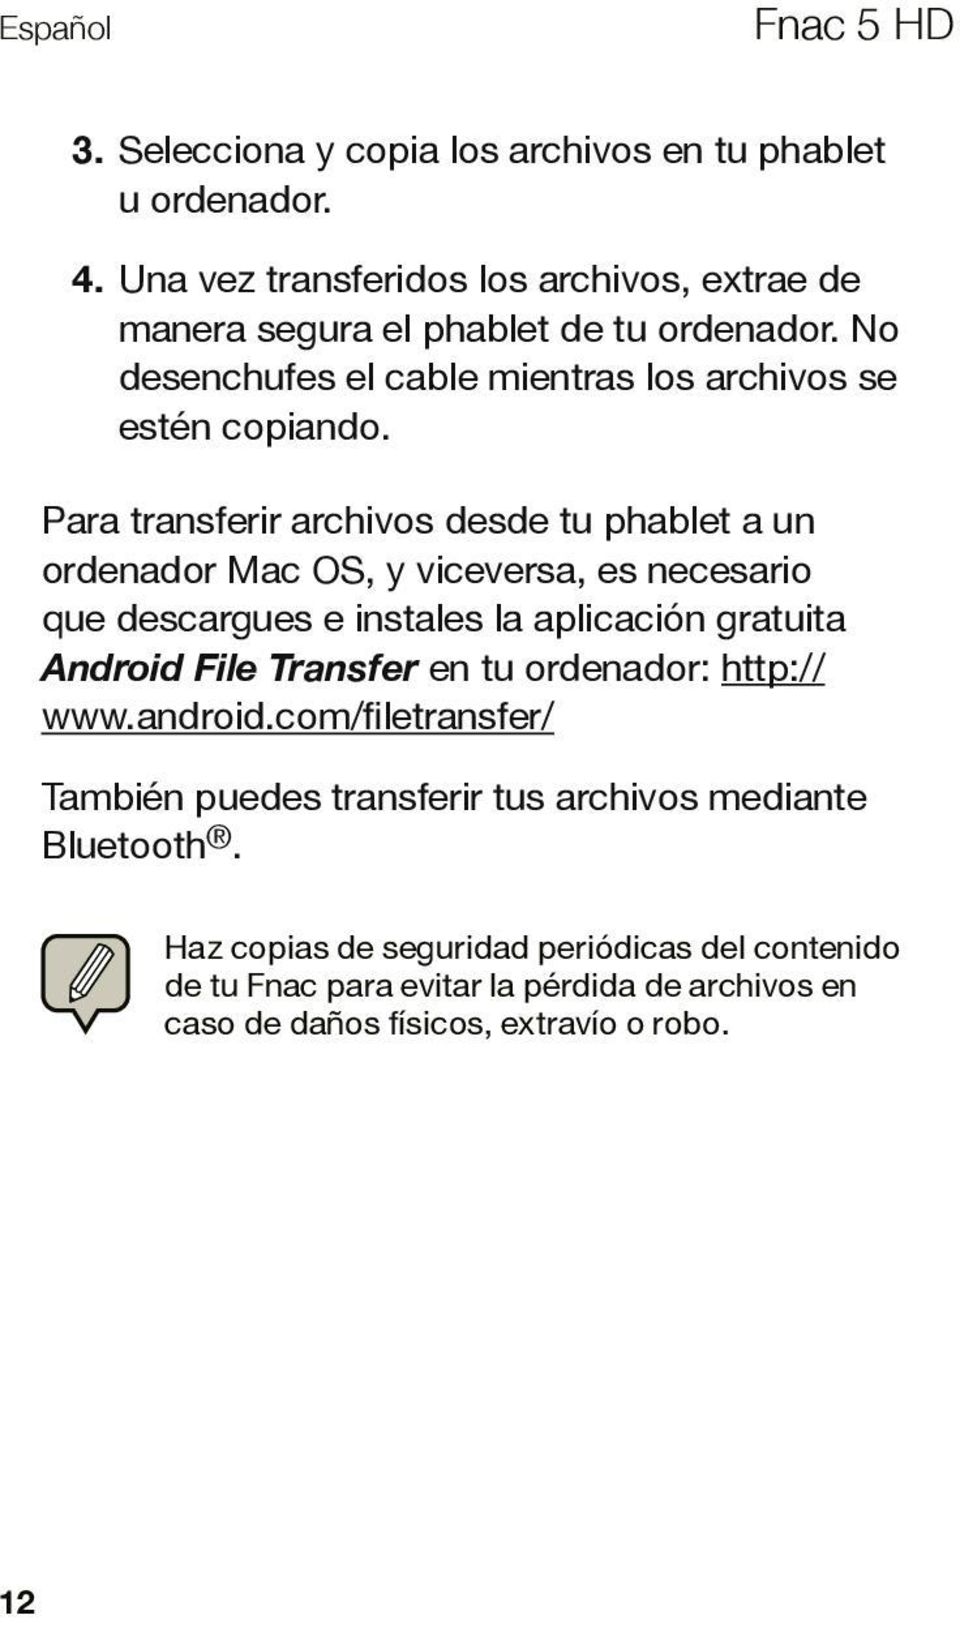 Para transferir archivos desde tu phablet a un ordenador Mac OS, y viceversa, es necesario que descargues e instales la aplicación gratuita Android File